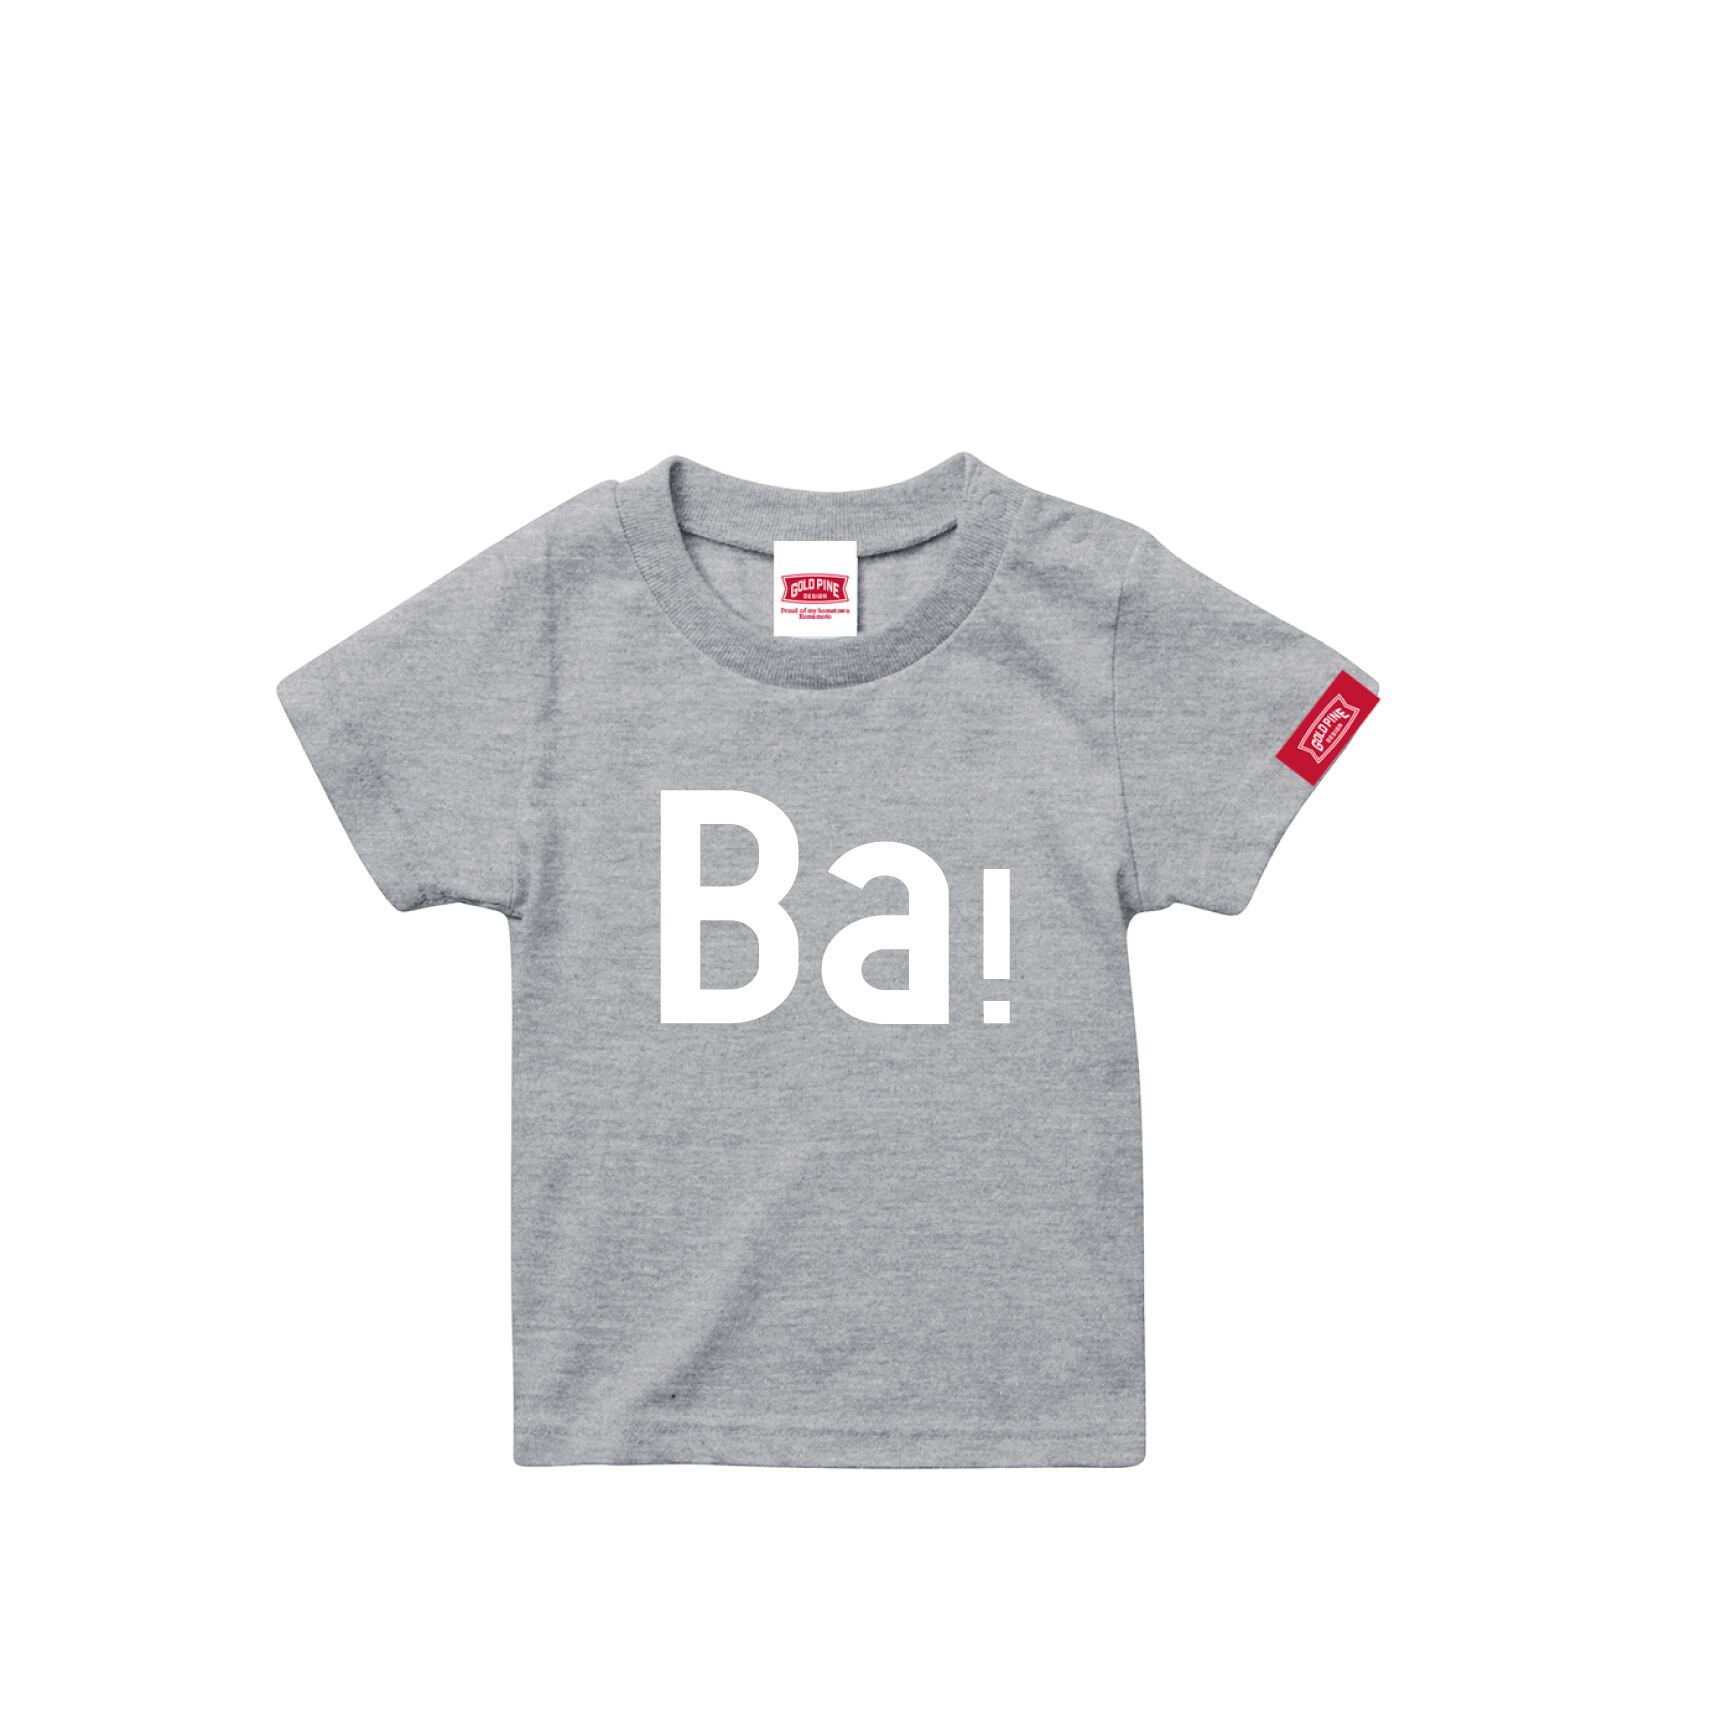 Ba！-Tshirt【Kids】Gray